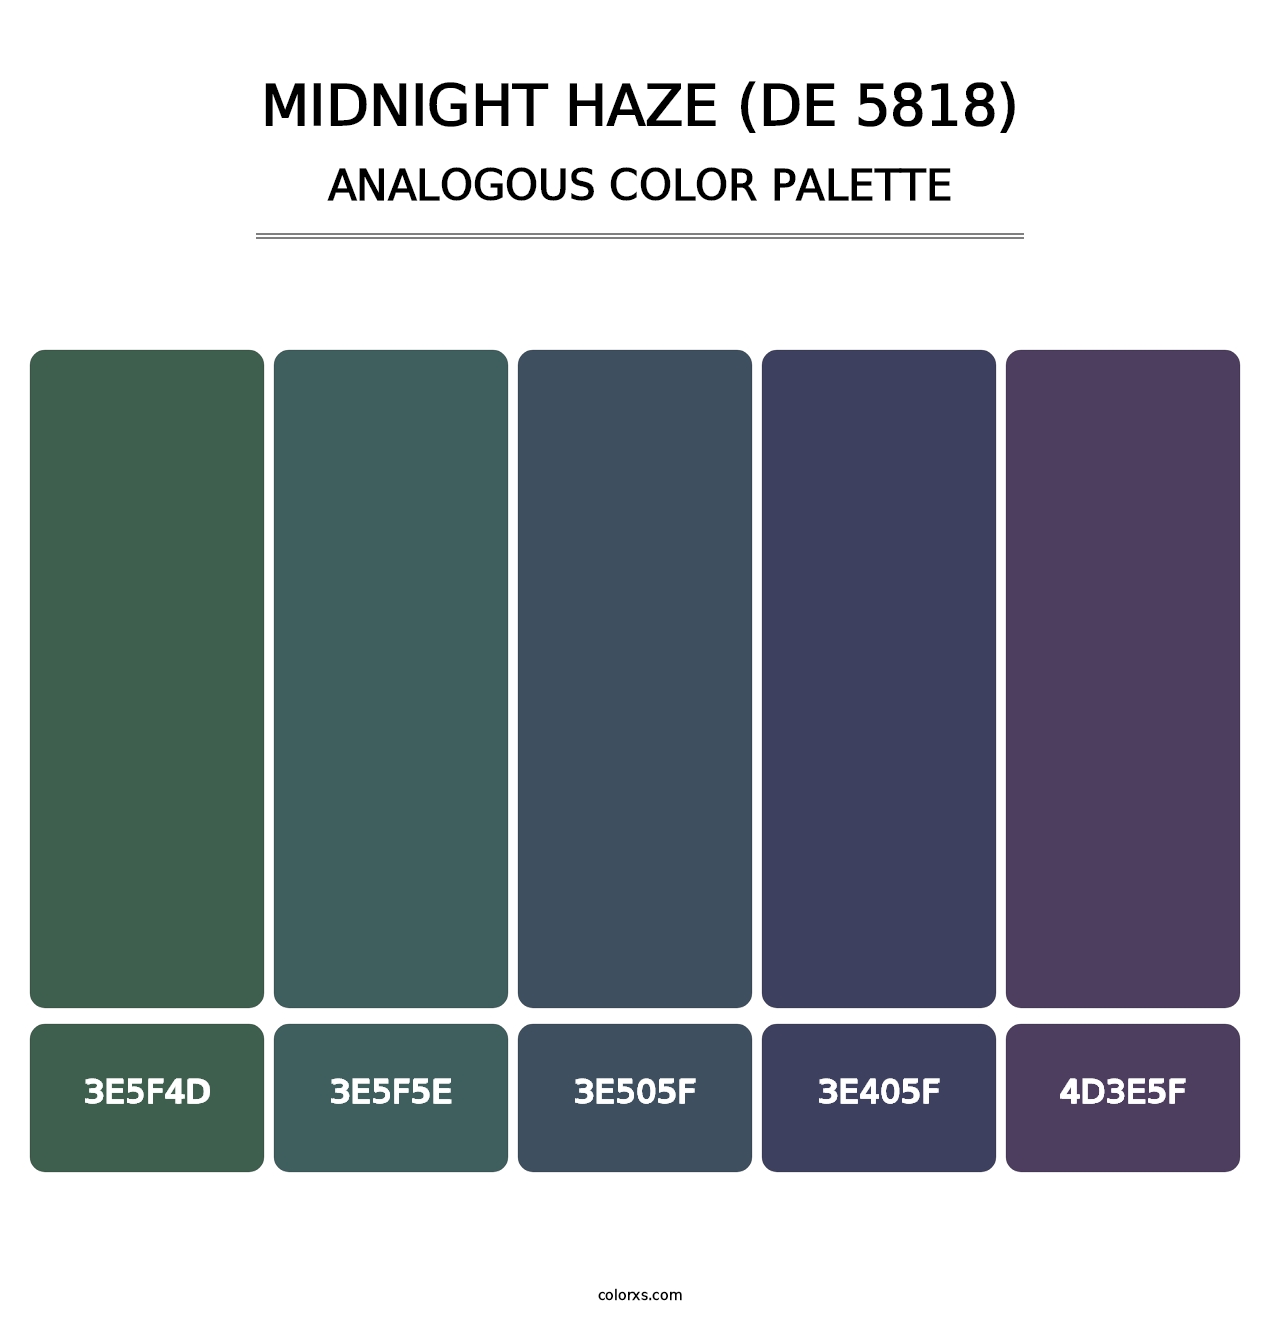 Midnight Haze (DE 5818) - Analogous Color Palette